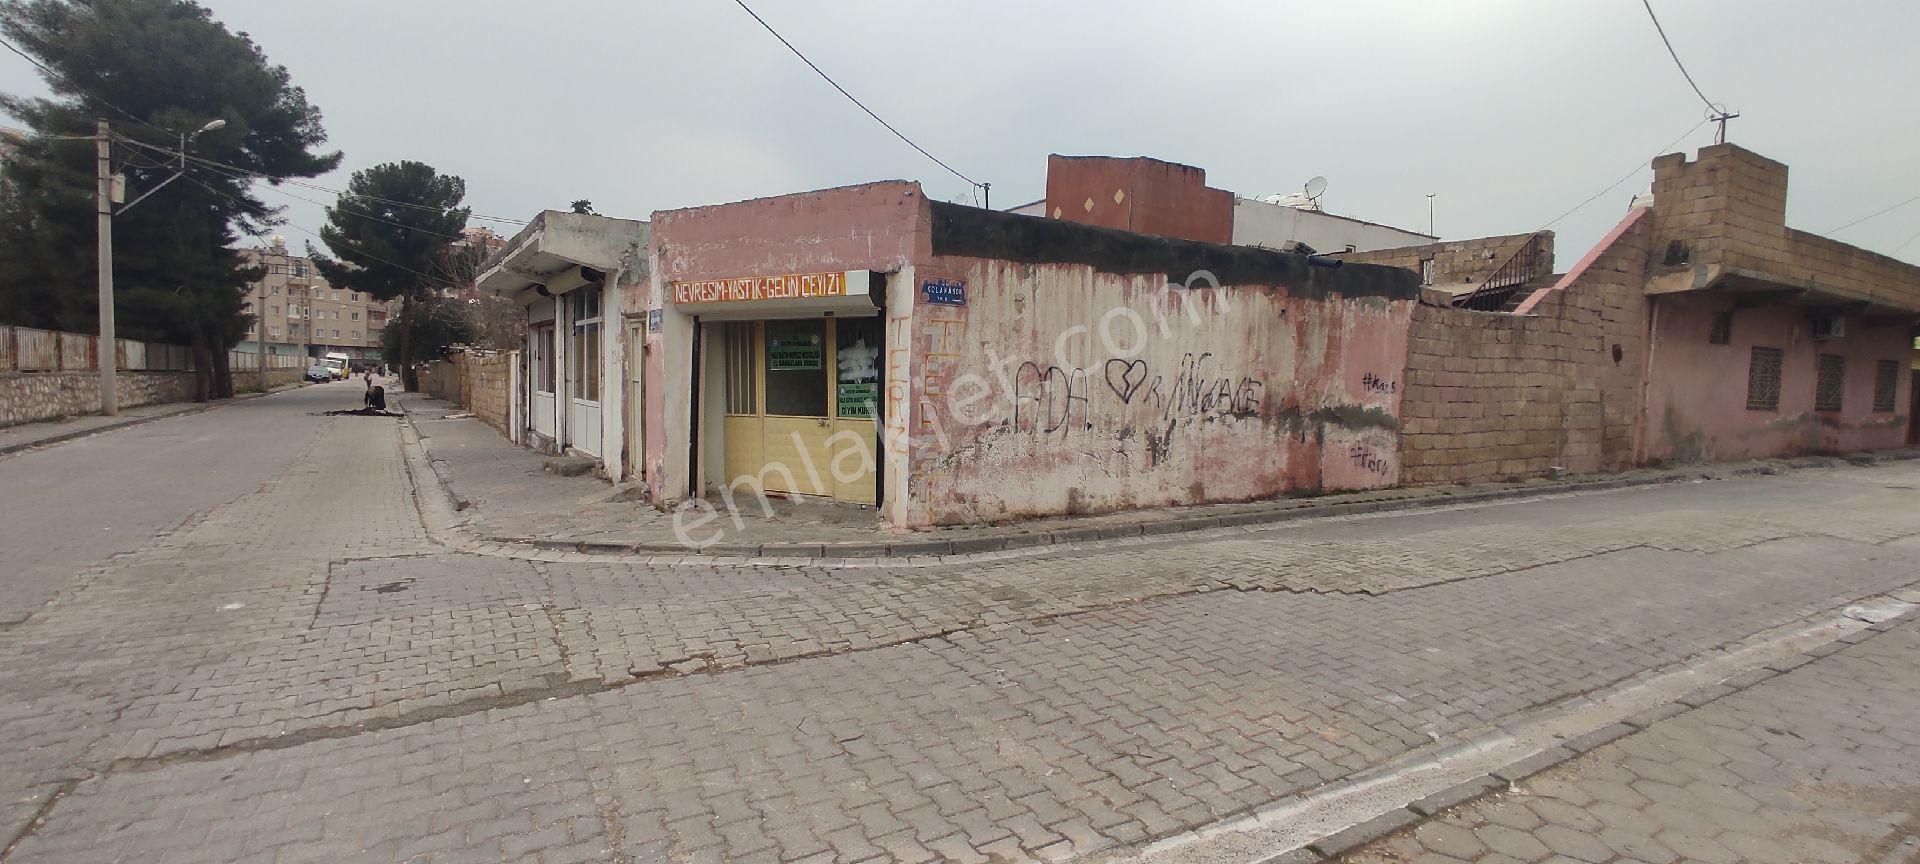 Kızıltepe Cumhuriyet Satılık Konut İmarlı YÜCEAY EMLAK Satılık 375m2 arsa içinde 2 ev ve 3 Dükkan